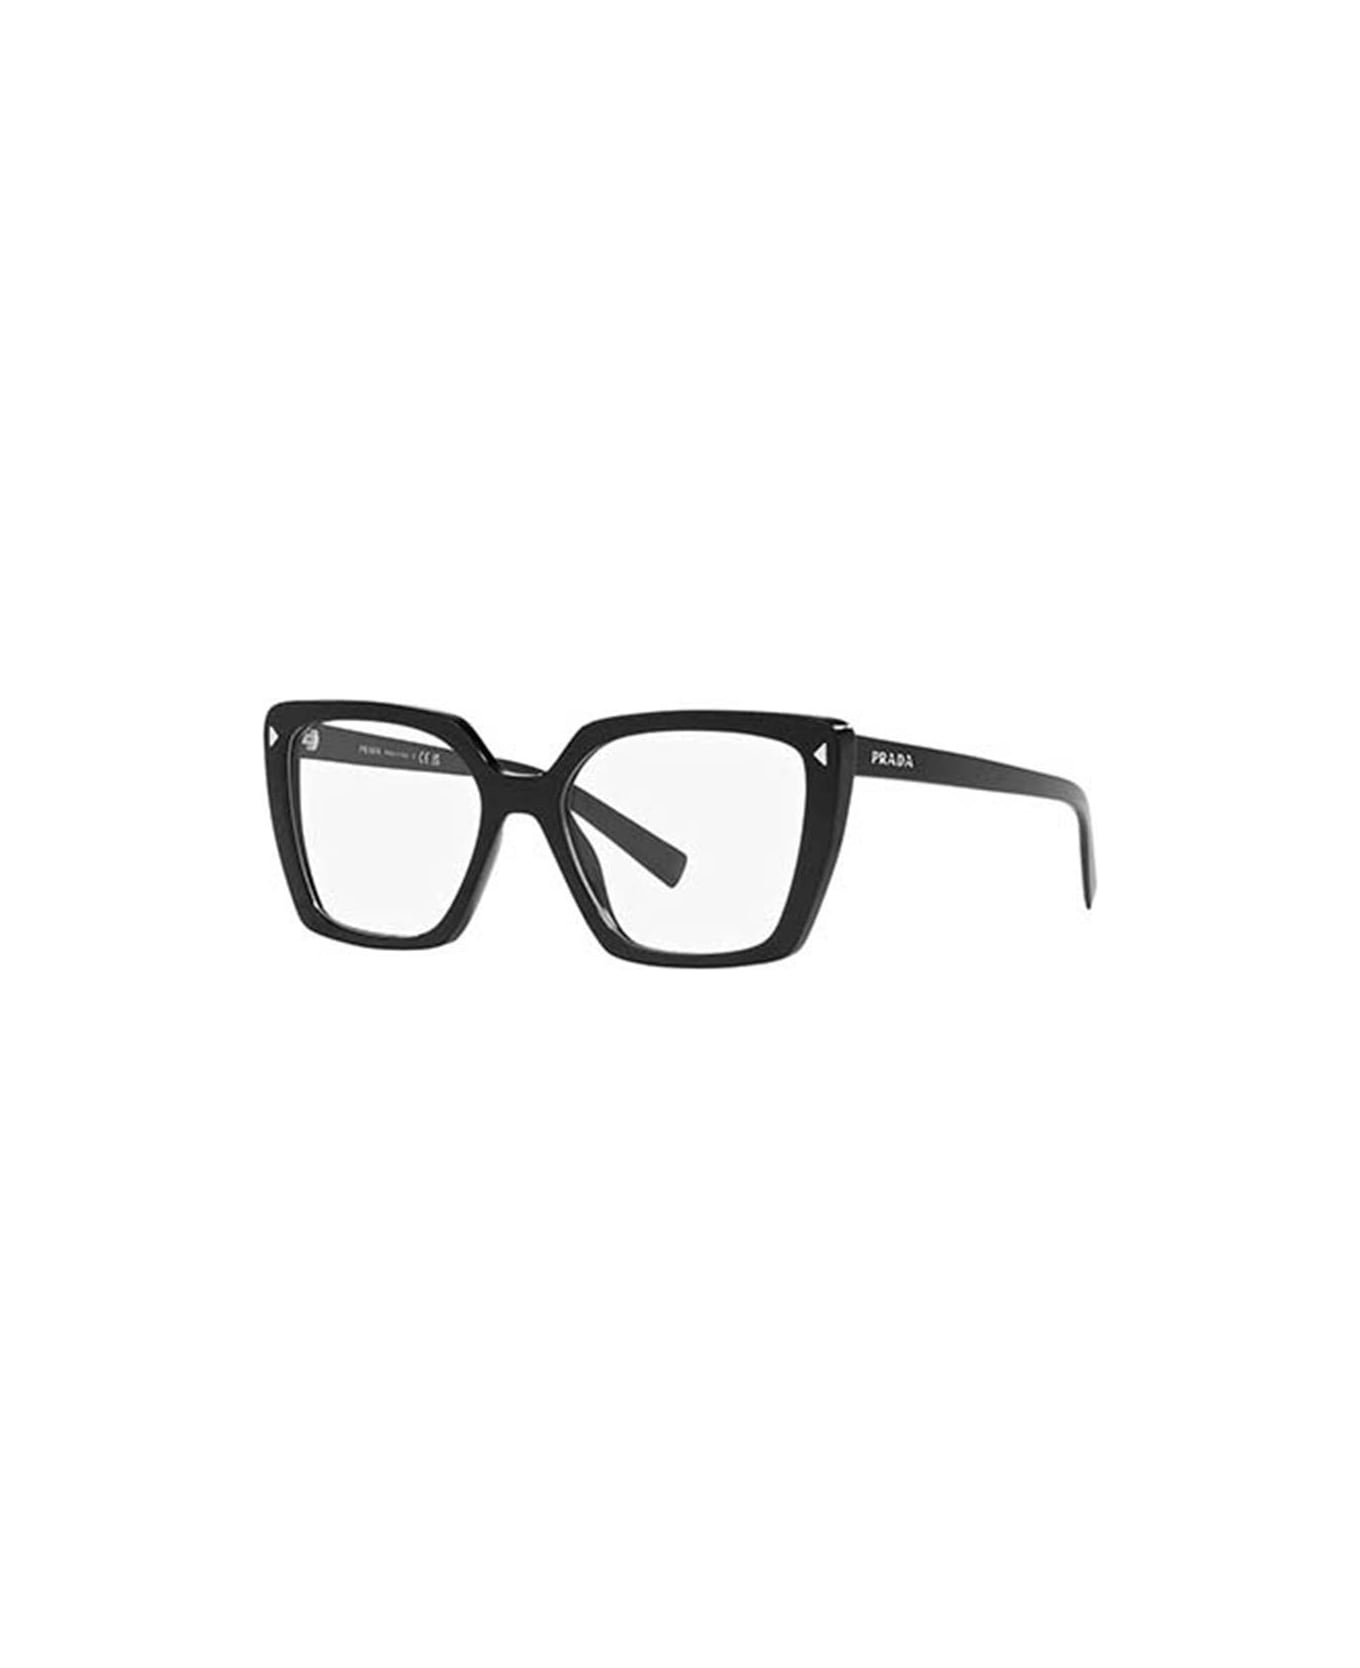 Prada Eyewear Glasses - 1AB1O1 アイウェア